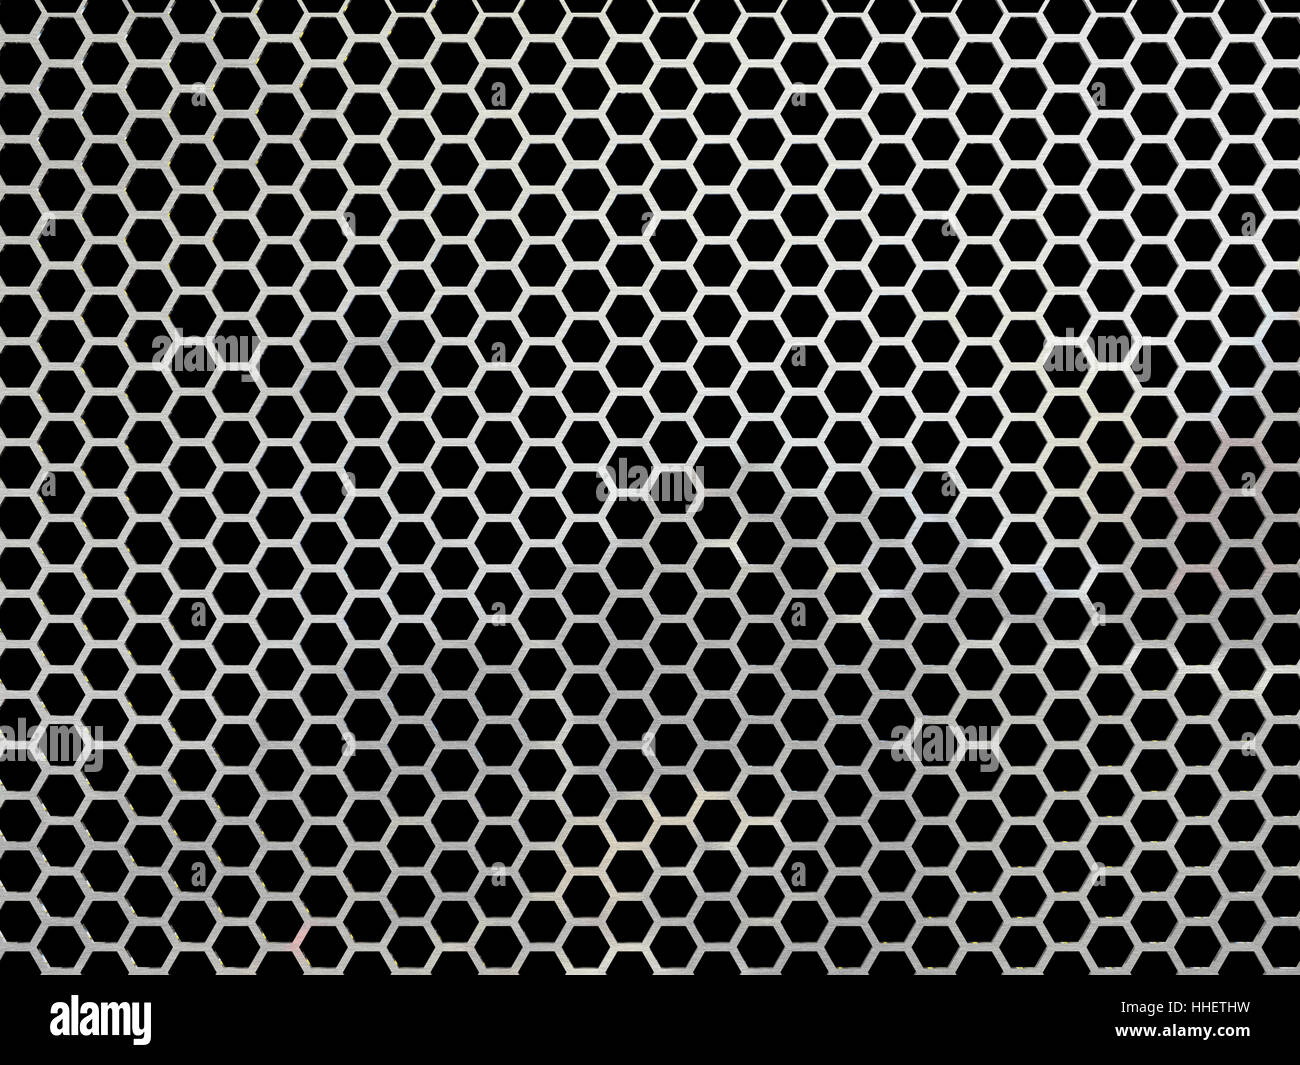 Acero, metal, aluminio, aluminio, malla, patrón hexagonal, telón de fondo  Fotografía de stock - Alamy